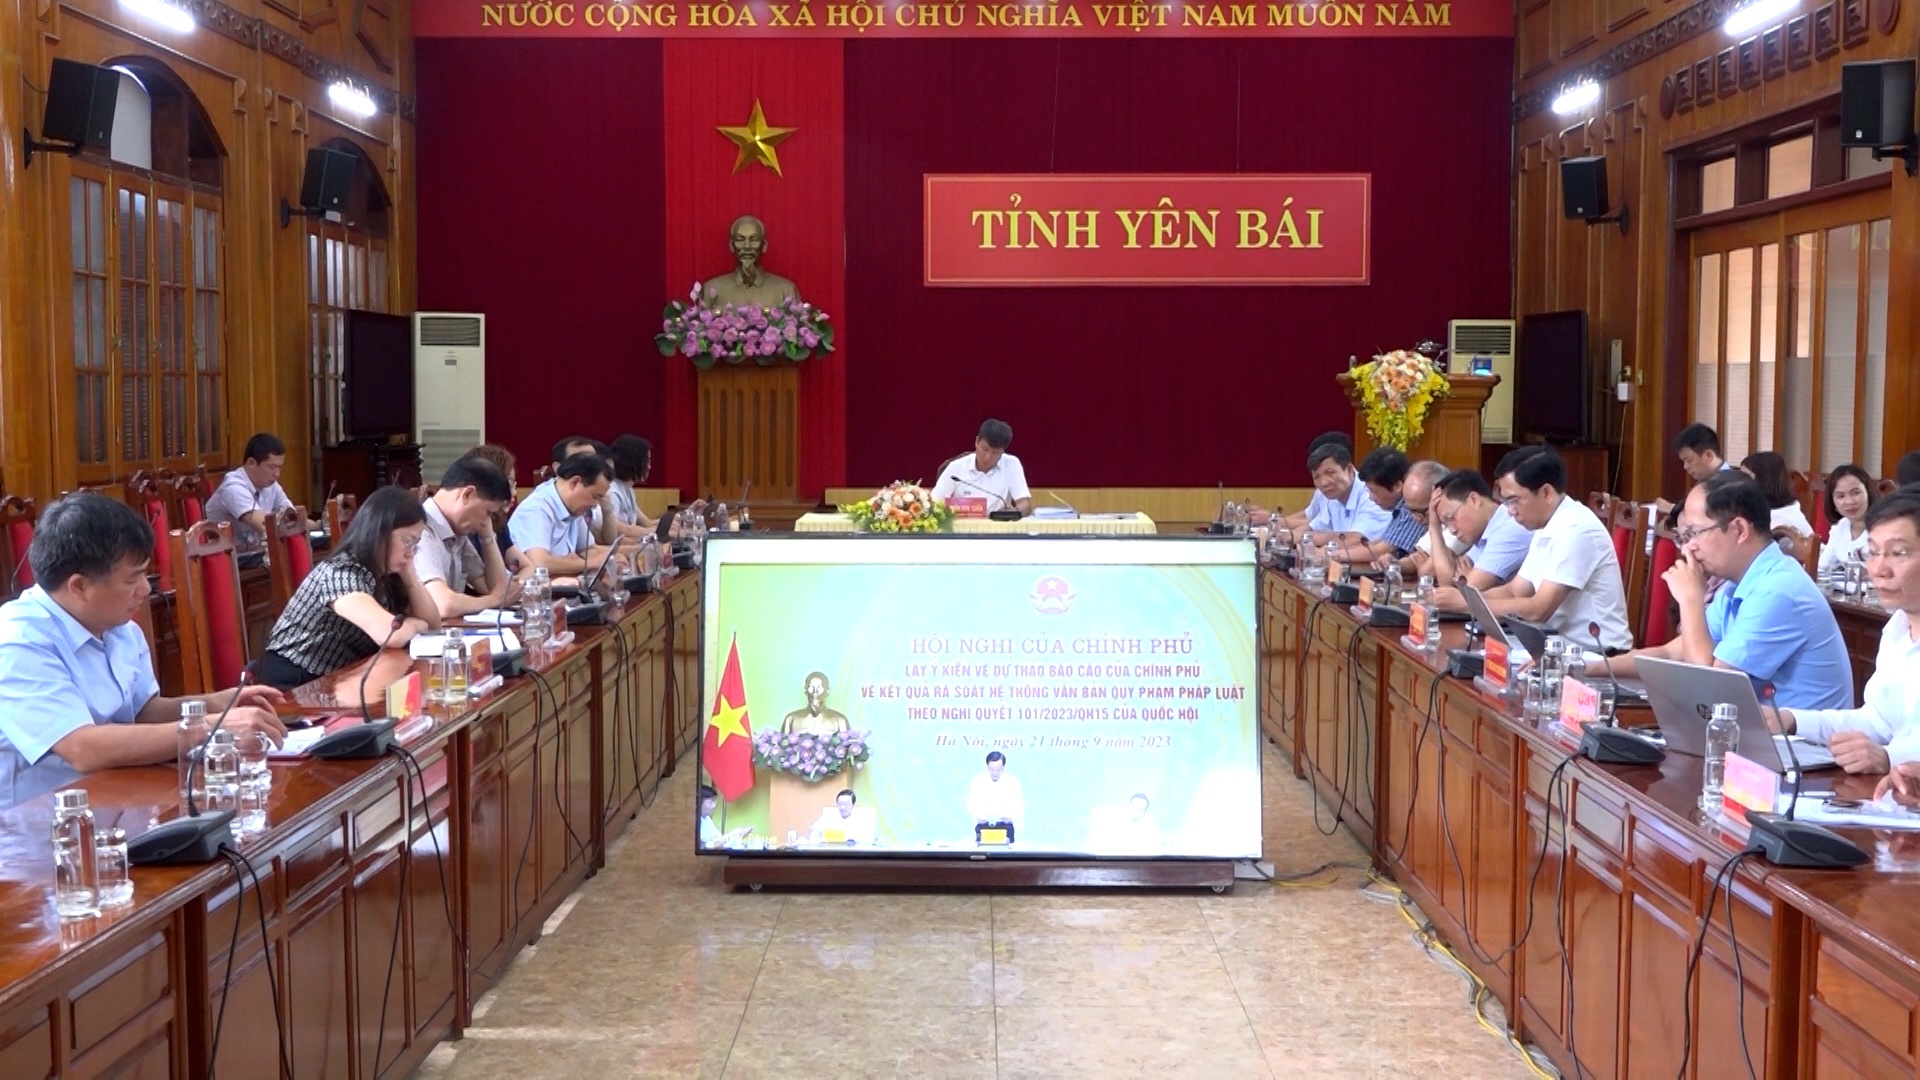 Đồng chí Chủ tịch UBND tỉnh Trần Huy Tuấn dự Hội nghị trực tuyến của Chính phủ về dự thảo Báo cáo Chính phủ kết quả rà soát hệ thống văn bản quy phạm pháp luật theo Nghị quyết của Quốc hội